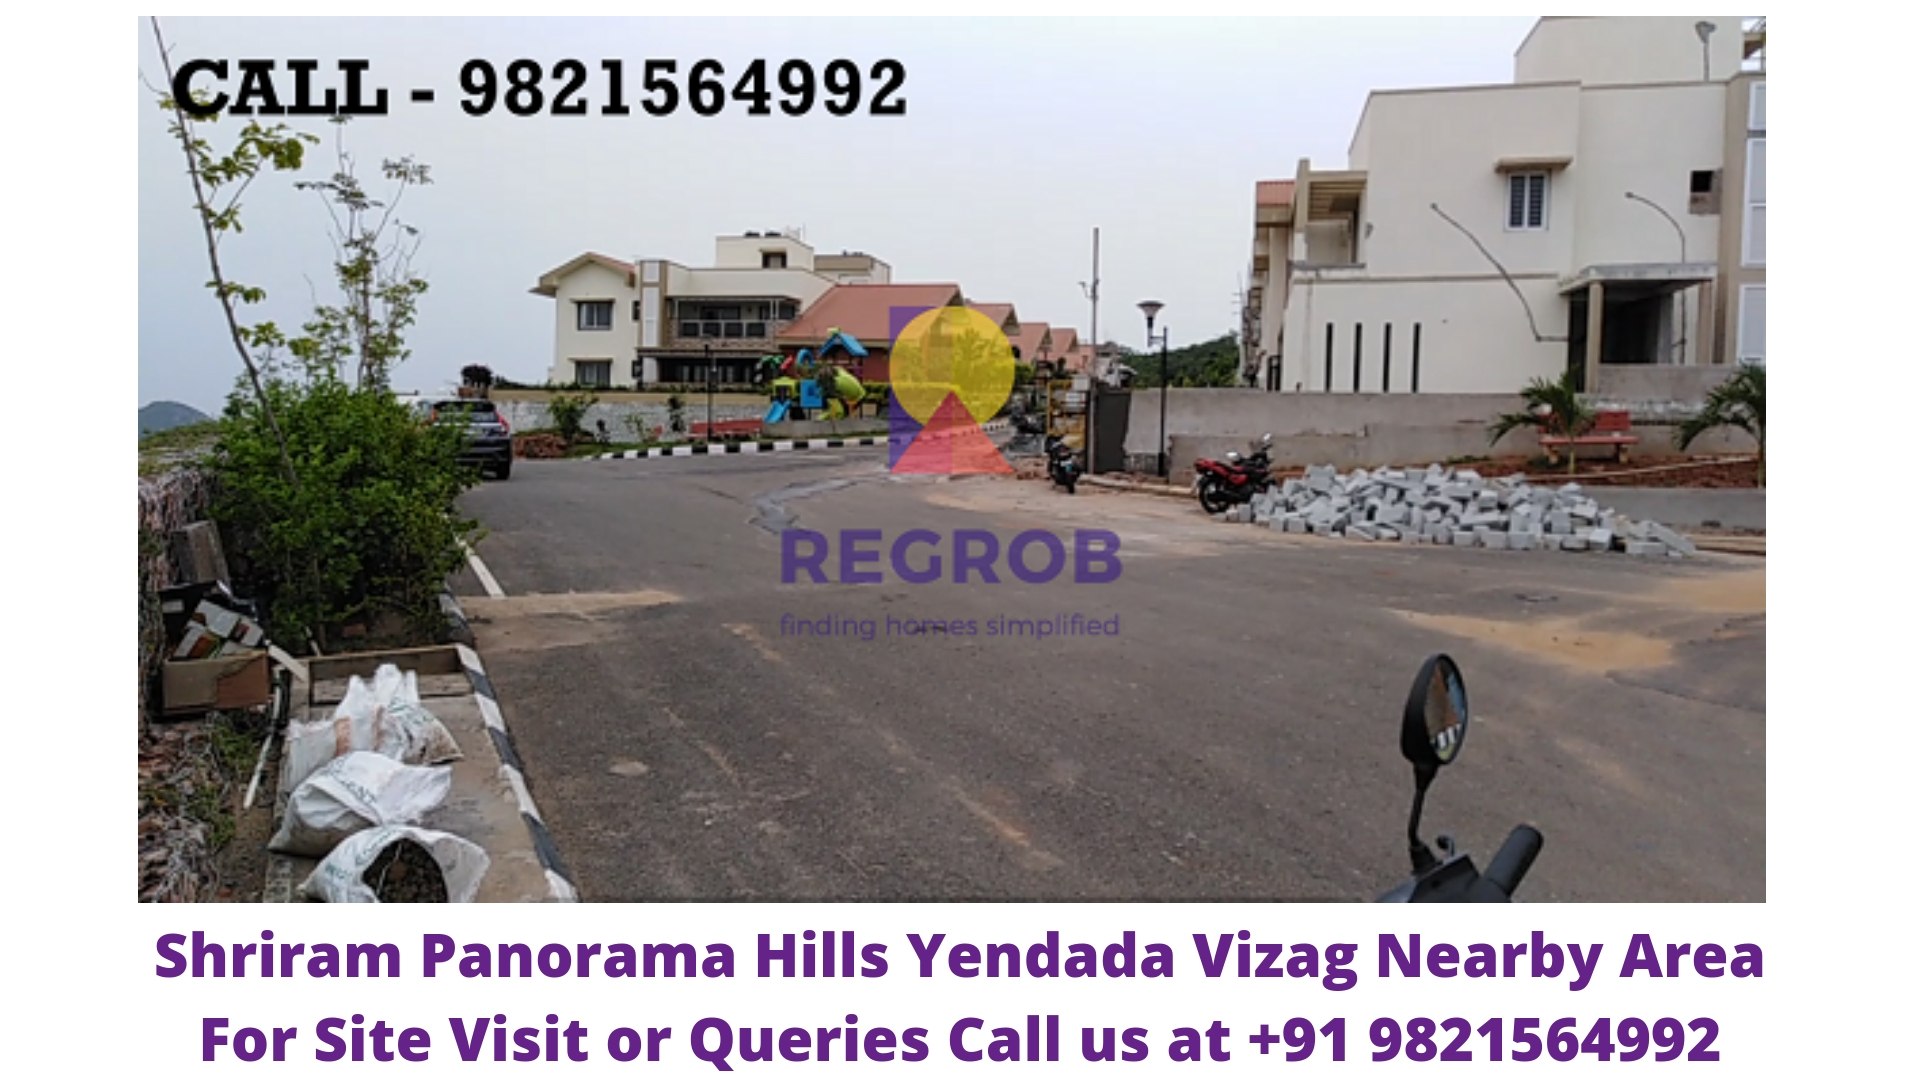 Shriram Panorama Hills Yendada Vizag